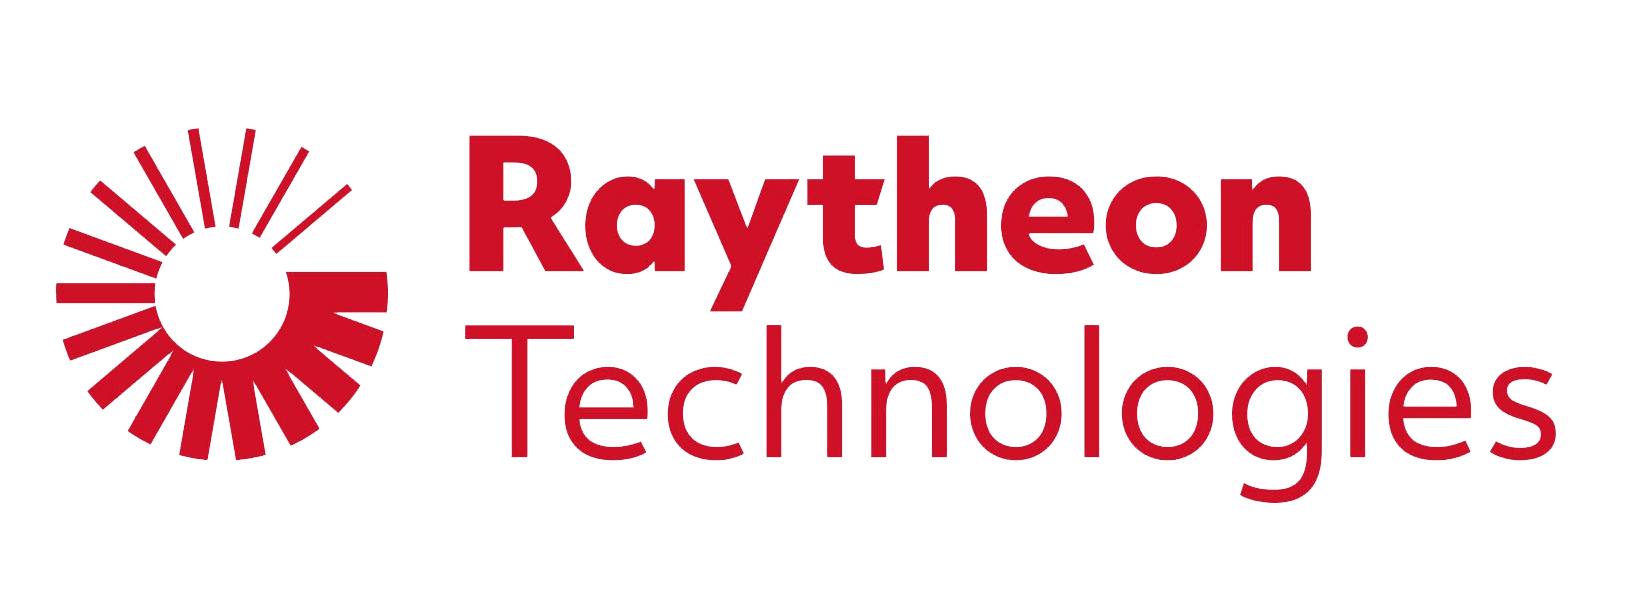 Customers Raytheon Technologies